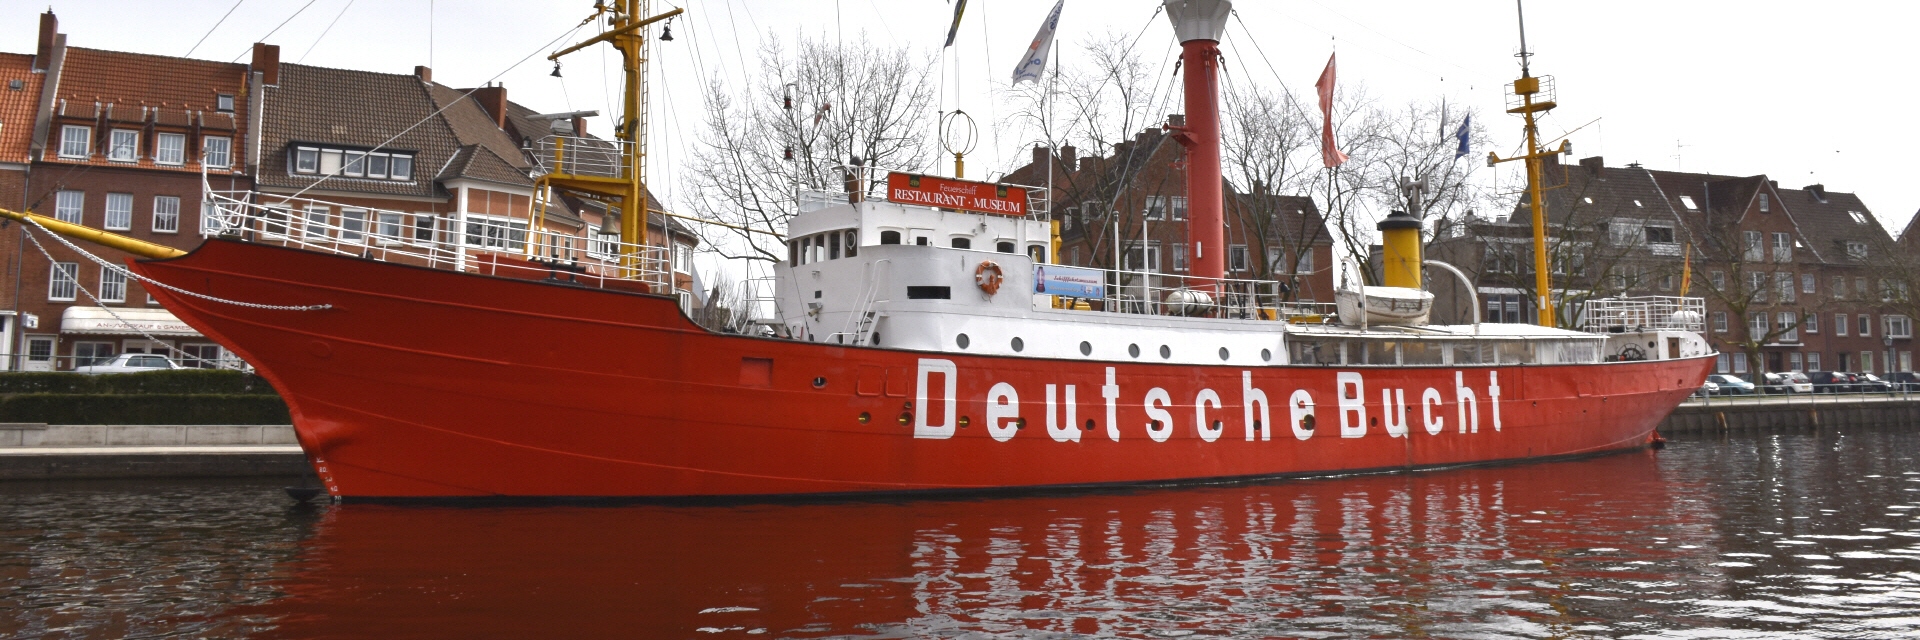 Het voormalige lichtschip Amrumbank-Deutsche Bucht. (Foto Amrumbank.de)